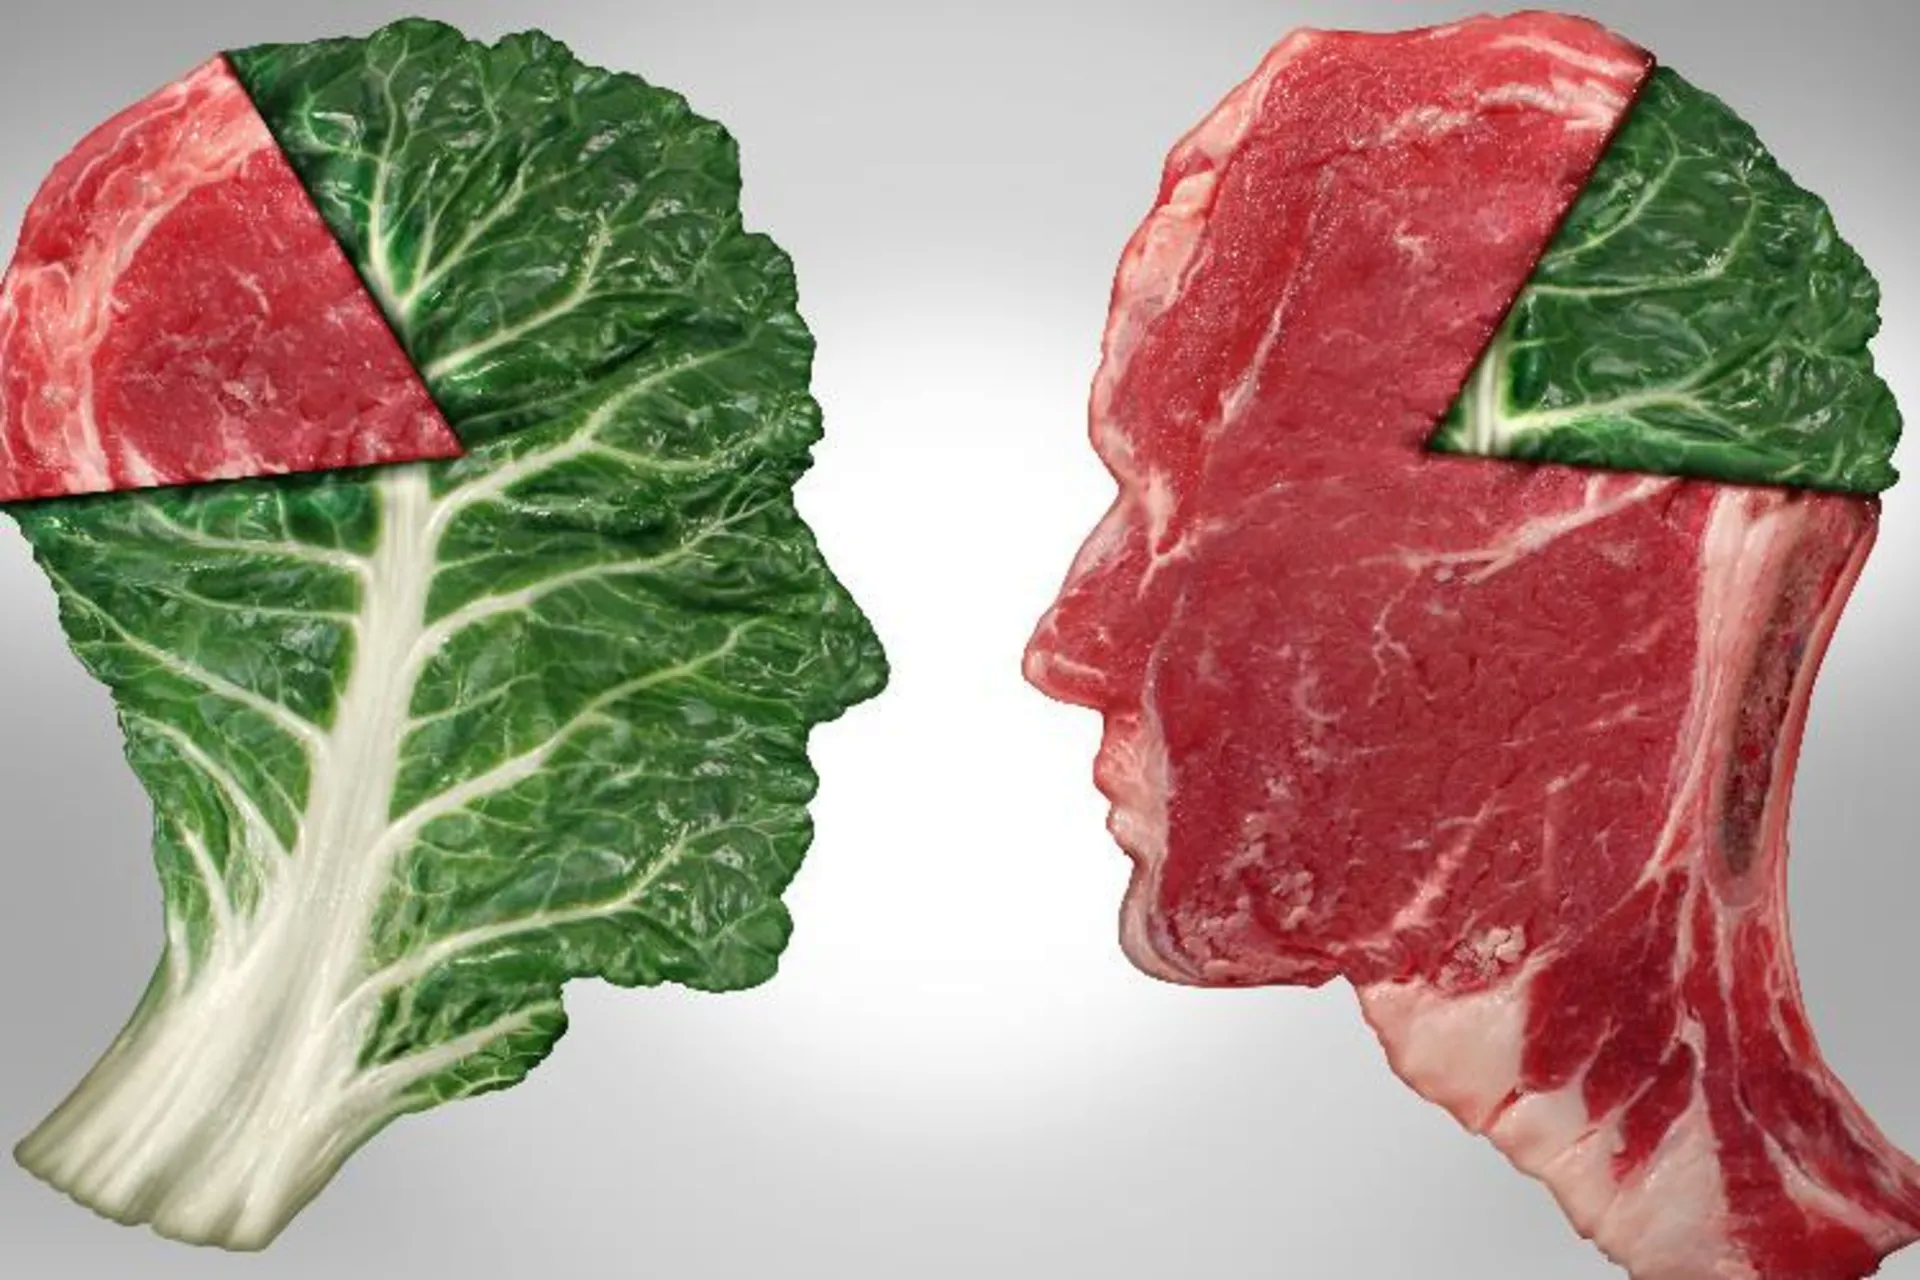 همه چیز درباره گوشت قرمز: ضرر و فایده گوشت قرمز، جایگزین گوشت قرمز و آخرین قیمت گوشت قرمز